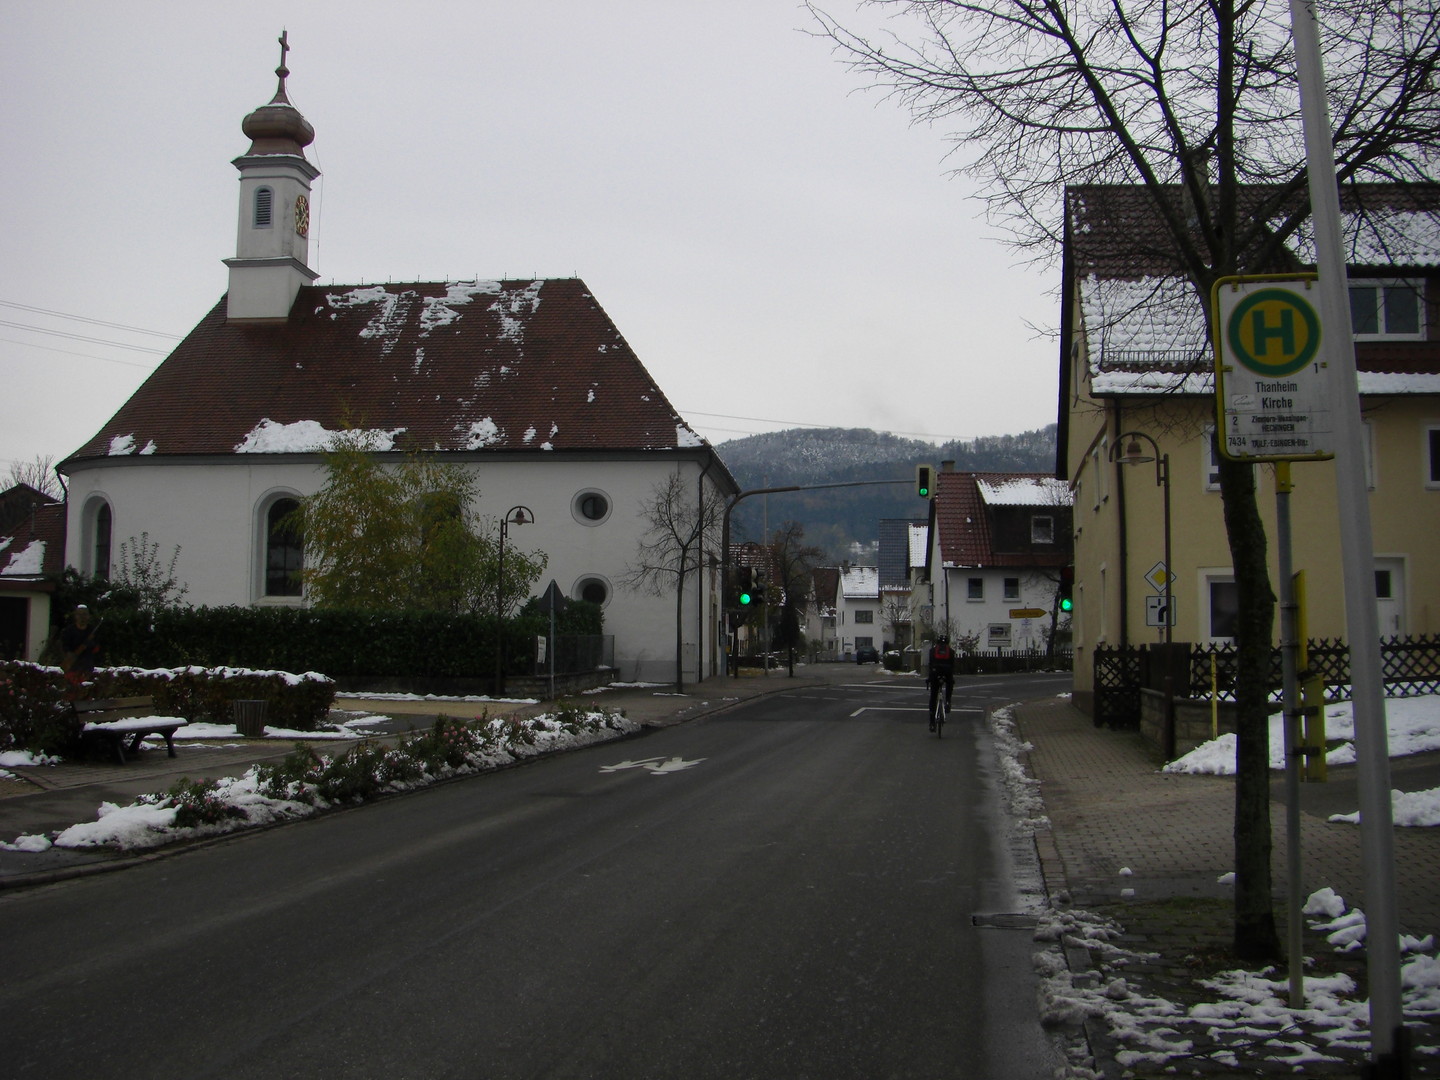 An der Kirche in Thanheim beginnt die Auffahrt zum Stich.